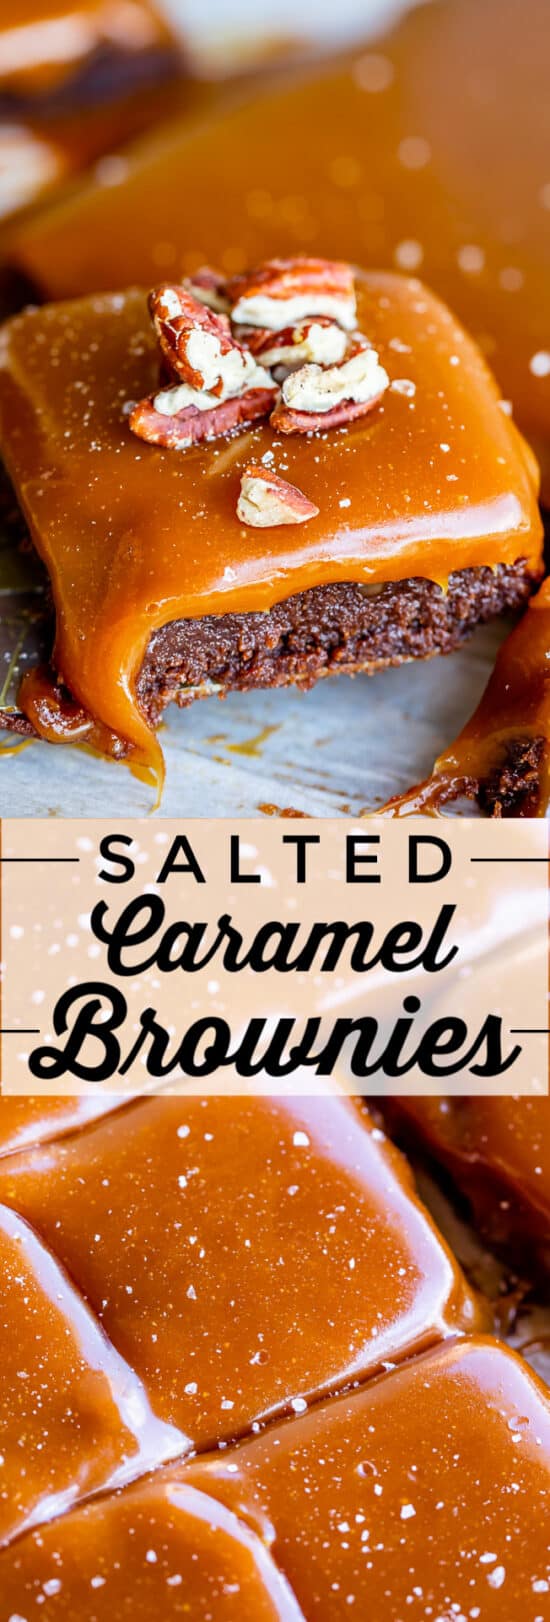 salted caramel brownies